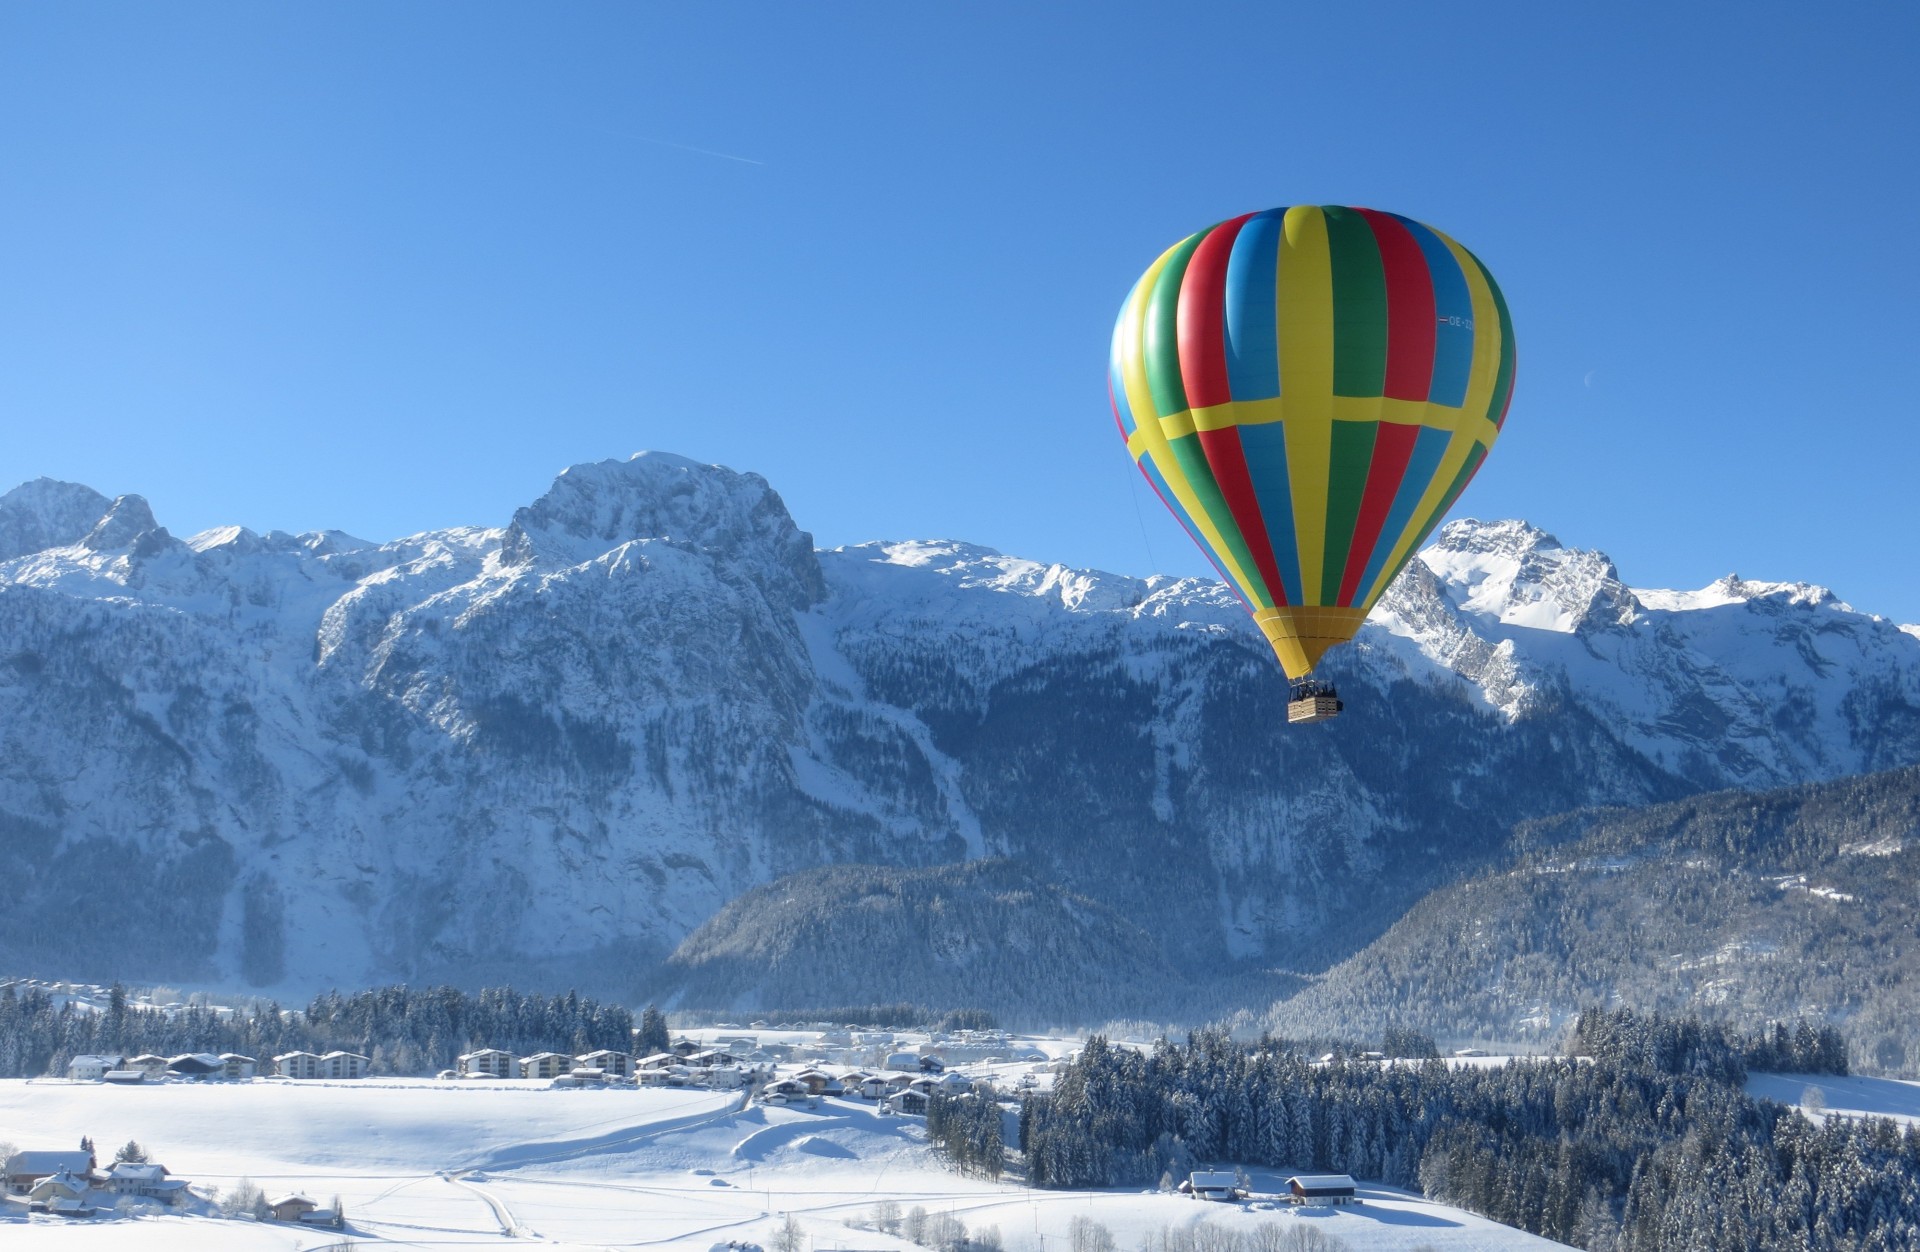 Balloon flight in the Alps of Valle d'Aosta